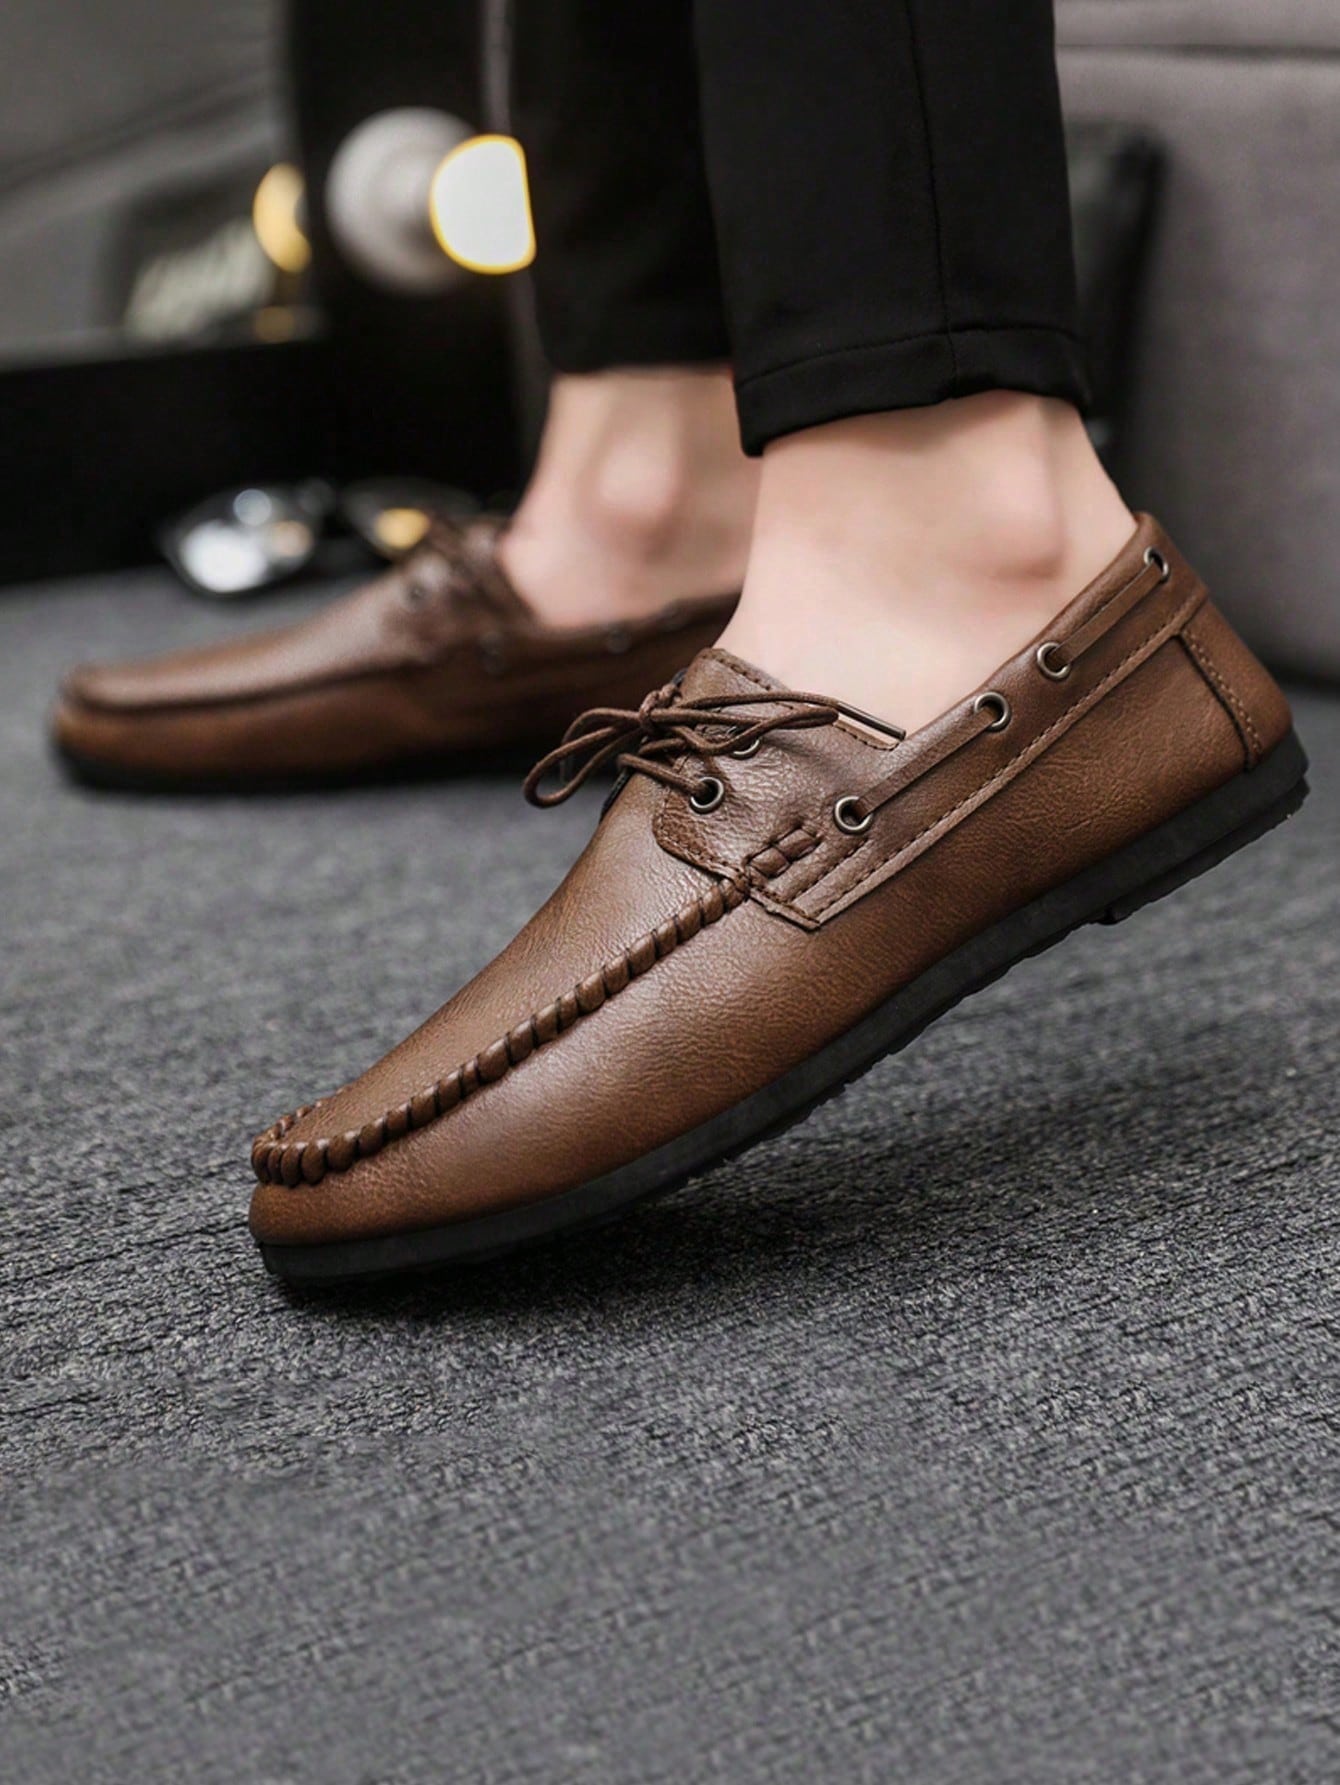 Официальные повседневные кожаные туфли в британском стиле на шнуровке для мужчин, коричневый